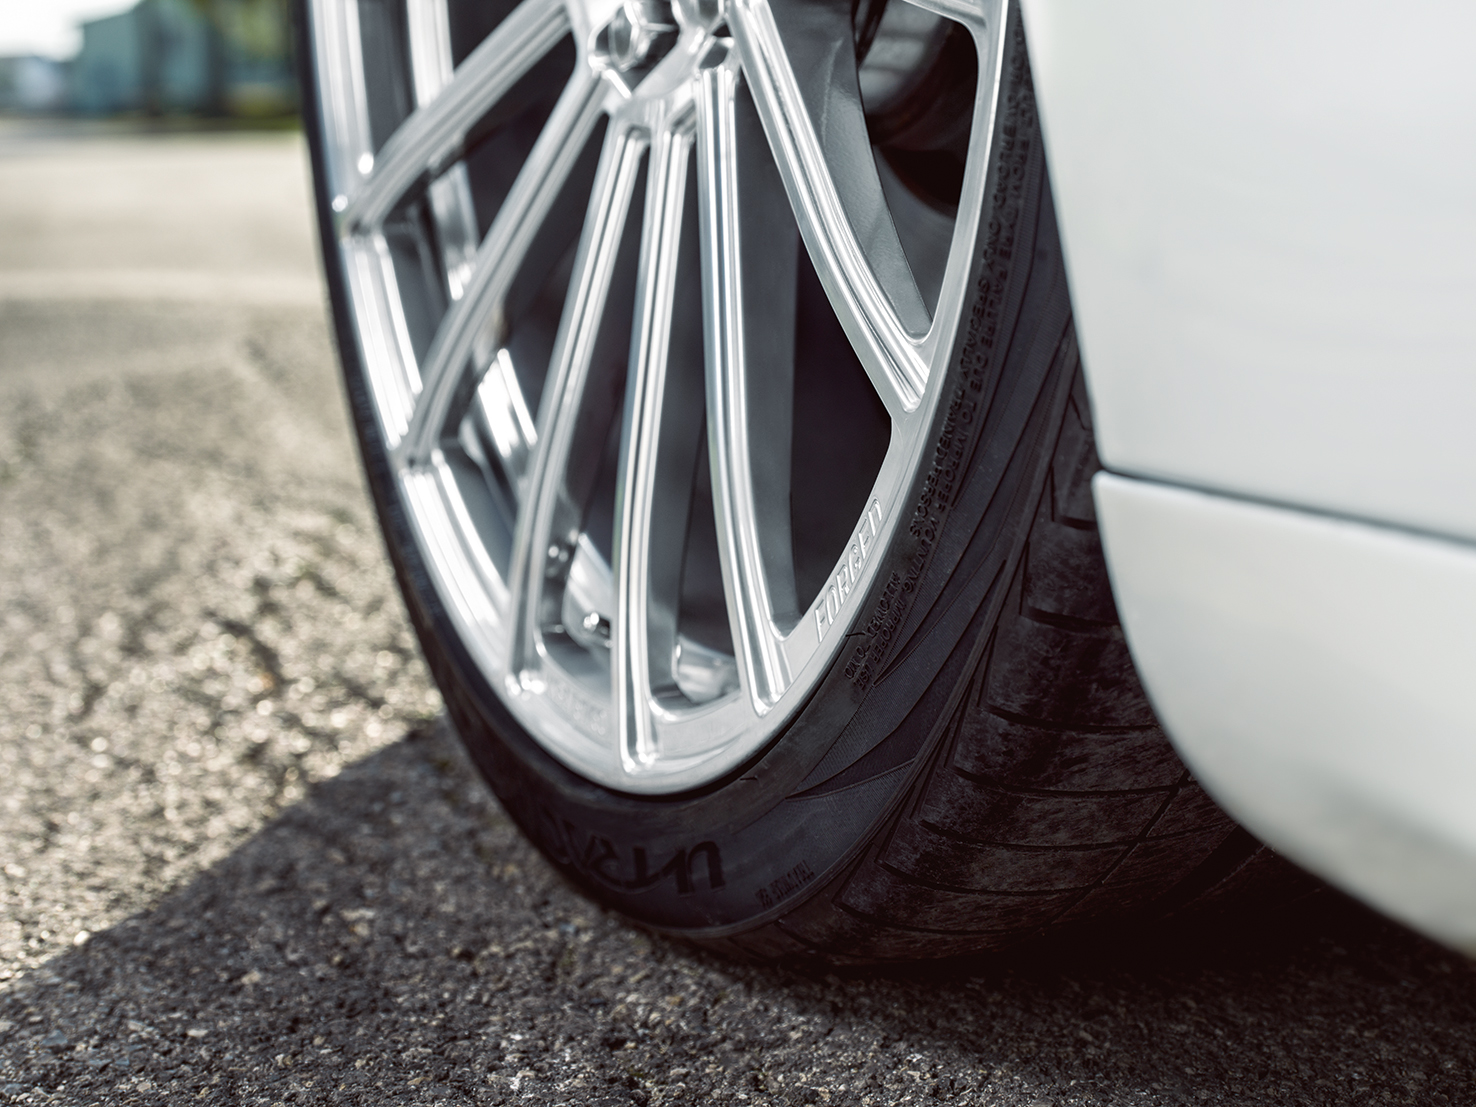 Sommerreifen kaufen Tipps - Kompletträder, Reifen inklusive Felgen für den Sommer bestellen - AEZ Steam forged, Tesla Modell S